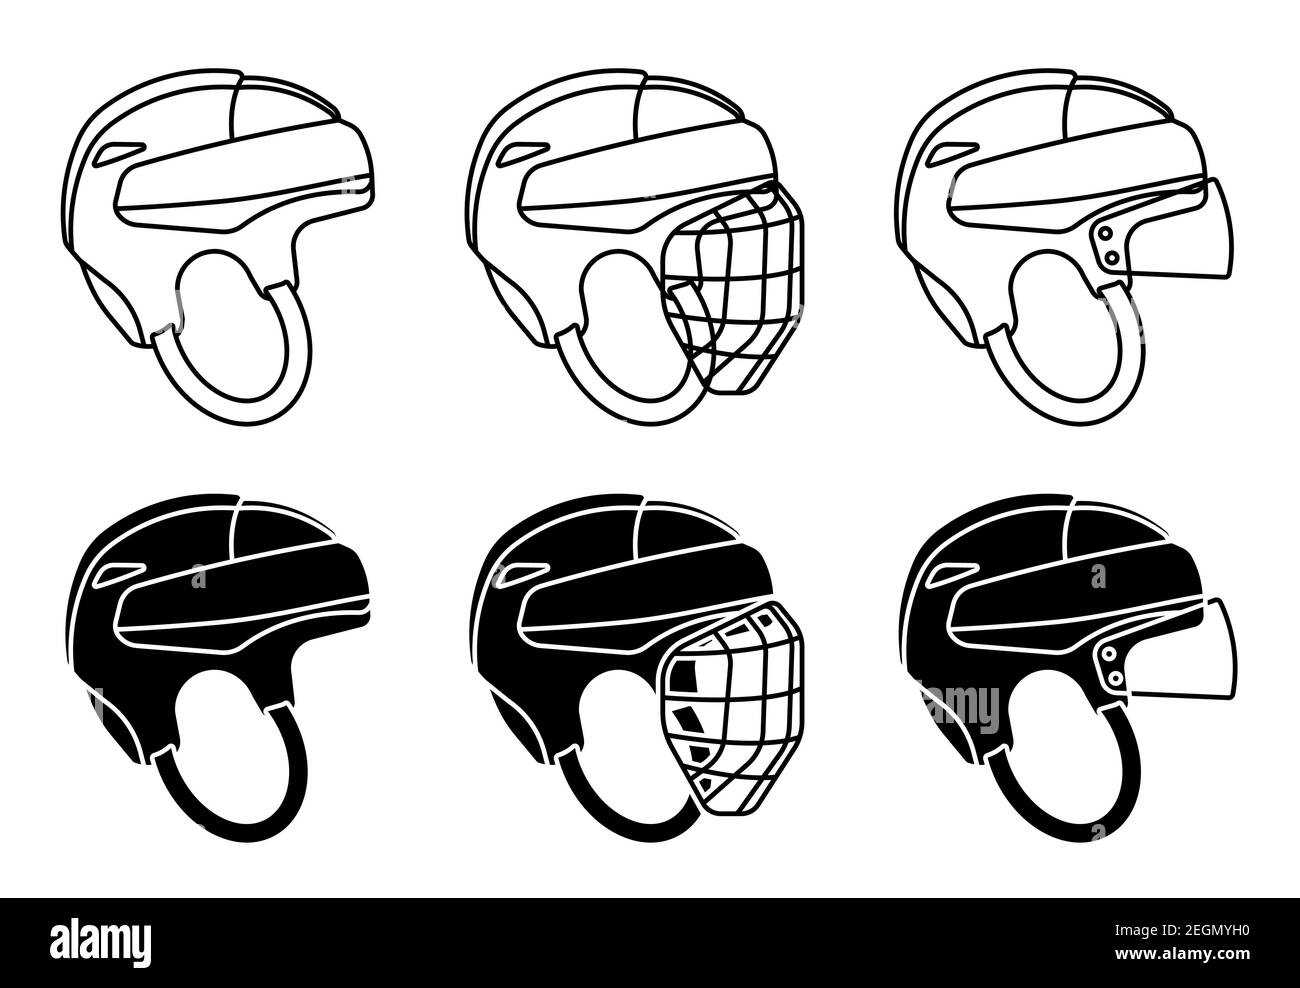 Open Hockey Helmsymbol, mit Schutzgitter und transparentem Visier. Eishockey-Feldspieler Schutzausrüstung. Vektor Stock Vektor